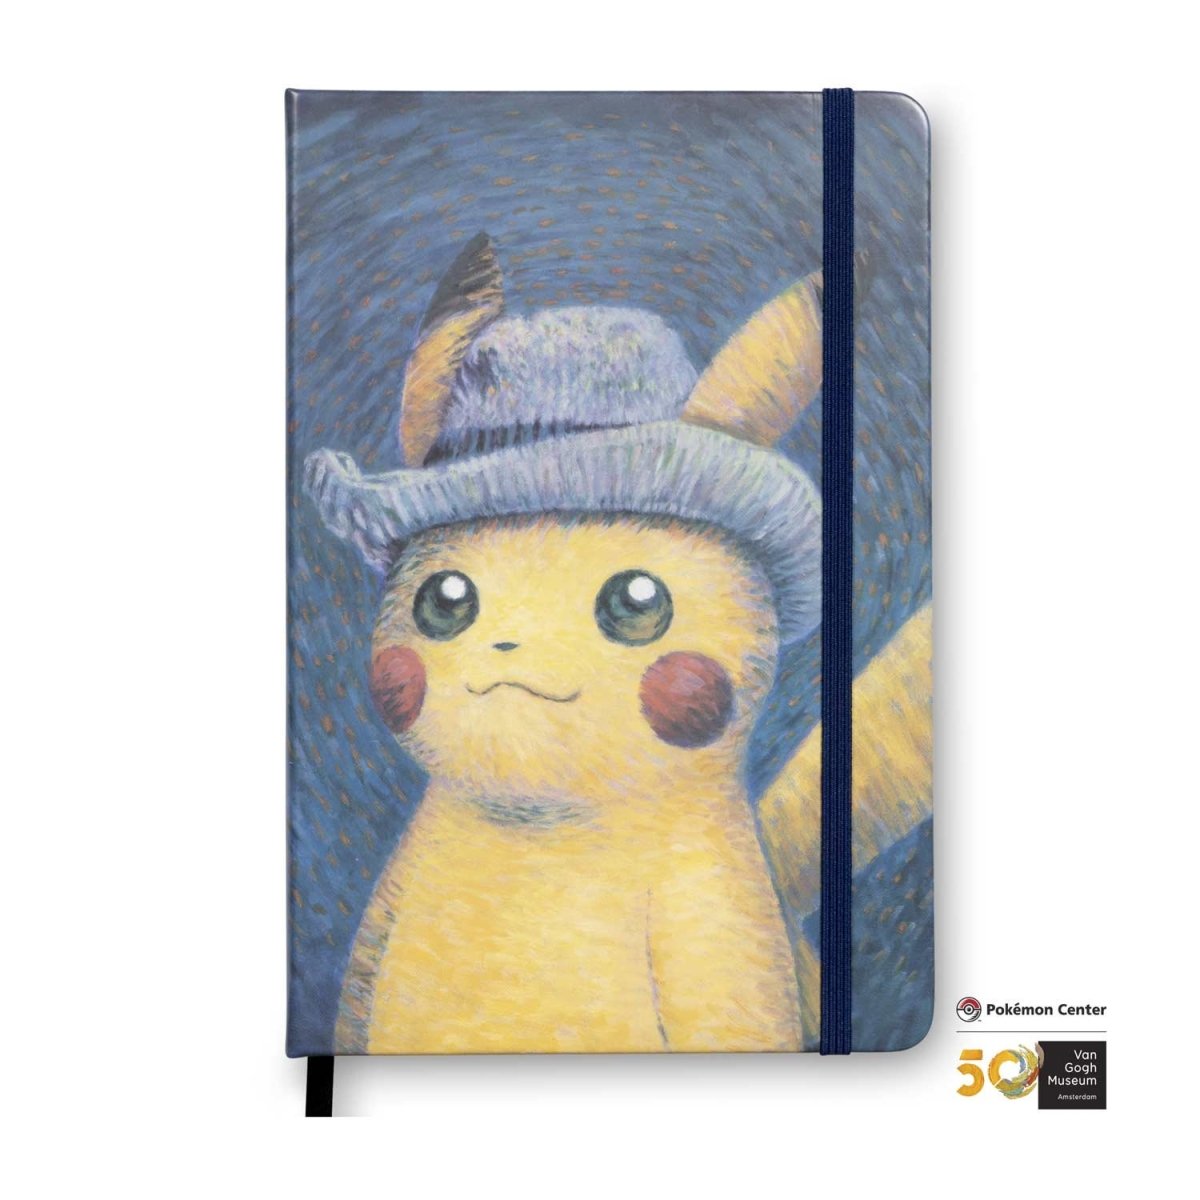 Pokemon Center 2015 Shikishi Art picture Pikachu in the farm Art 4 pcs set